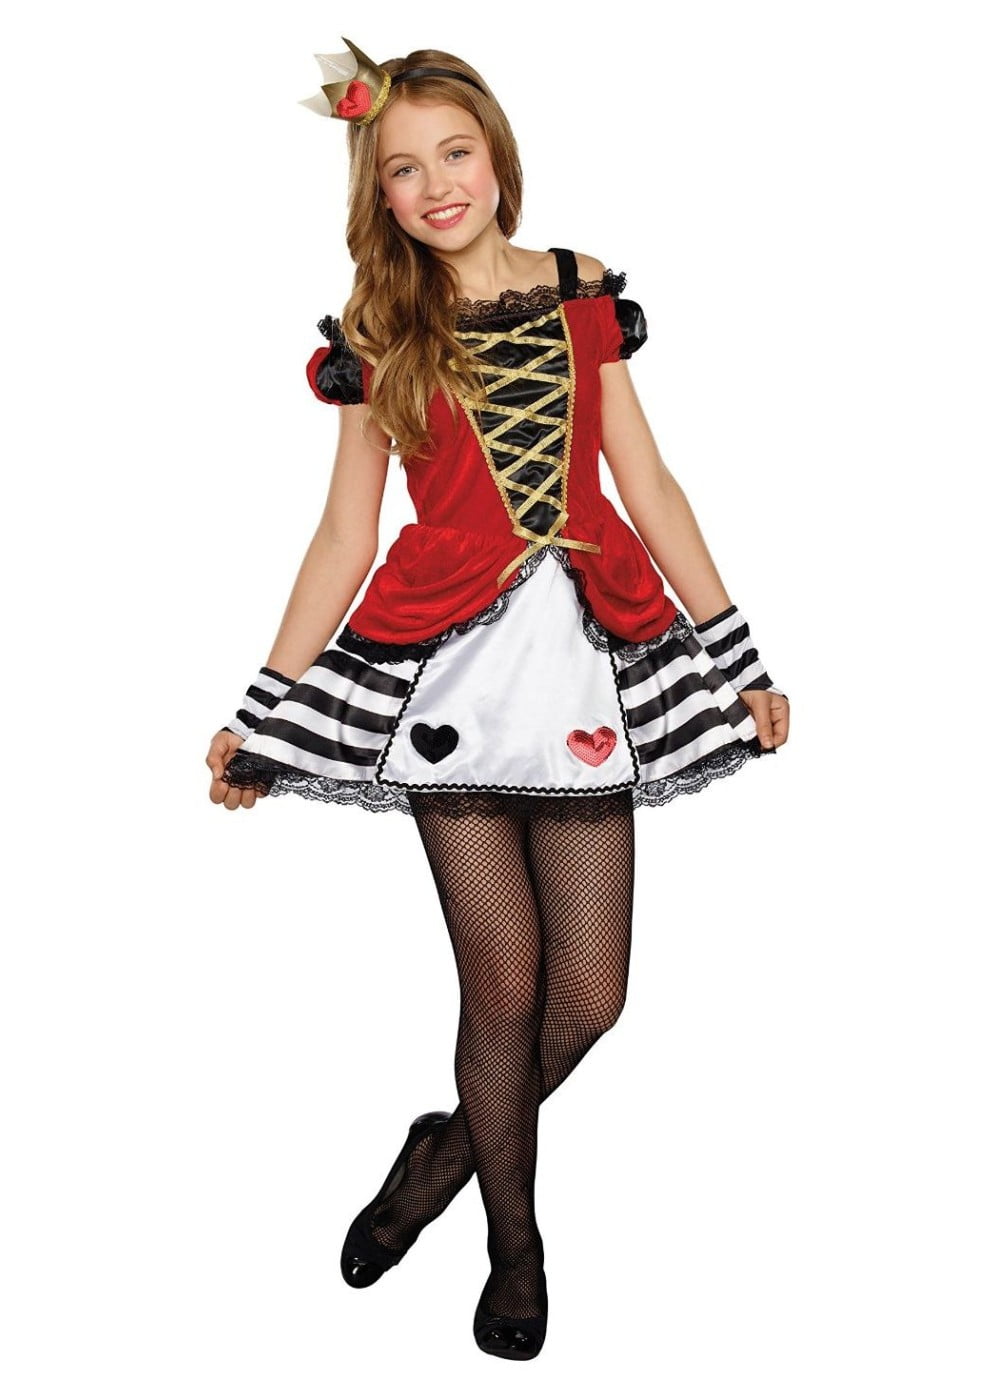 Queen of Heart Girls Tween Costume ...